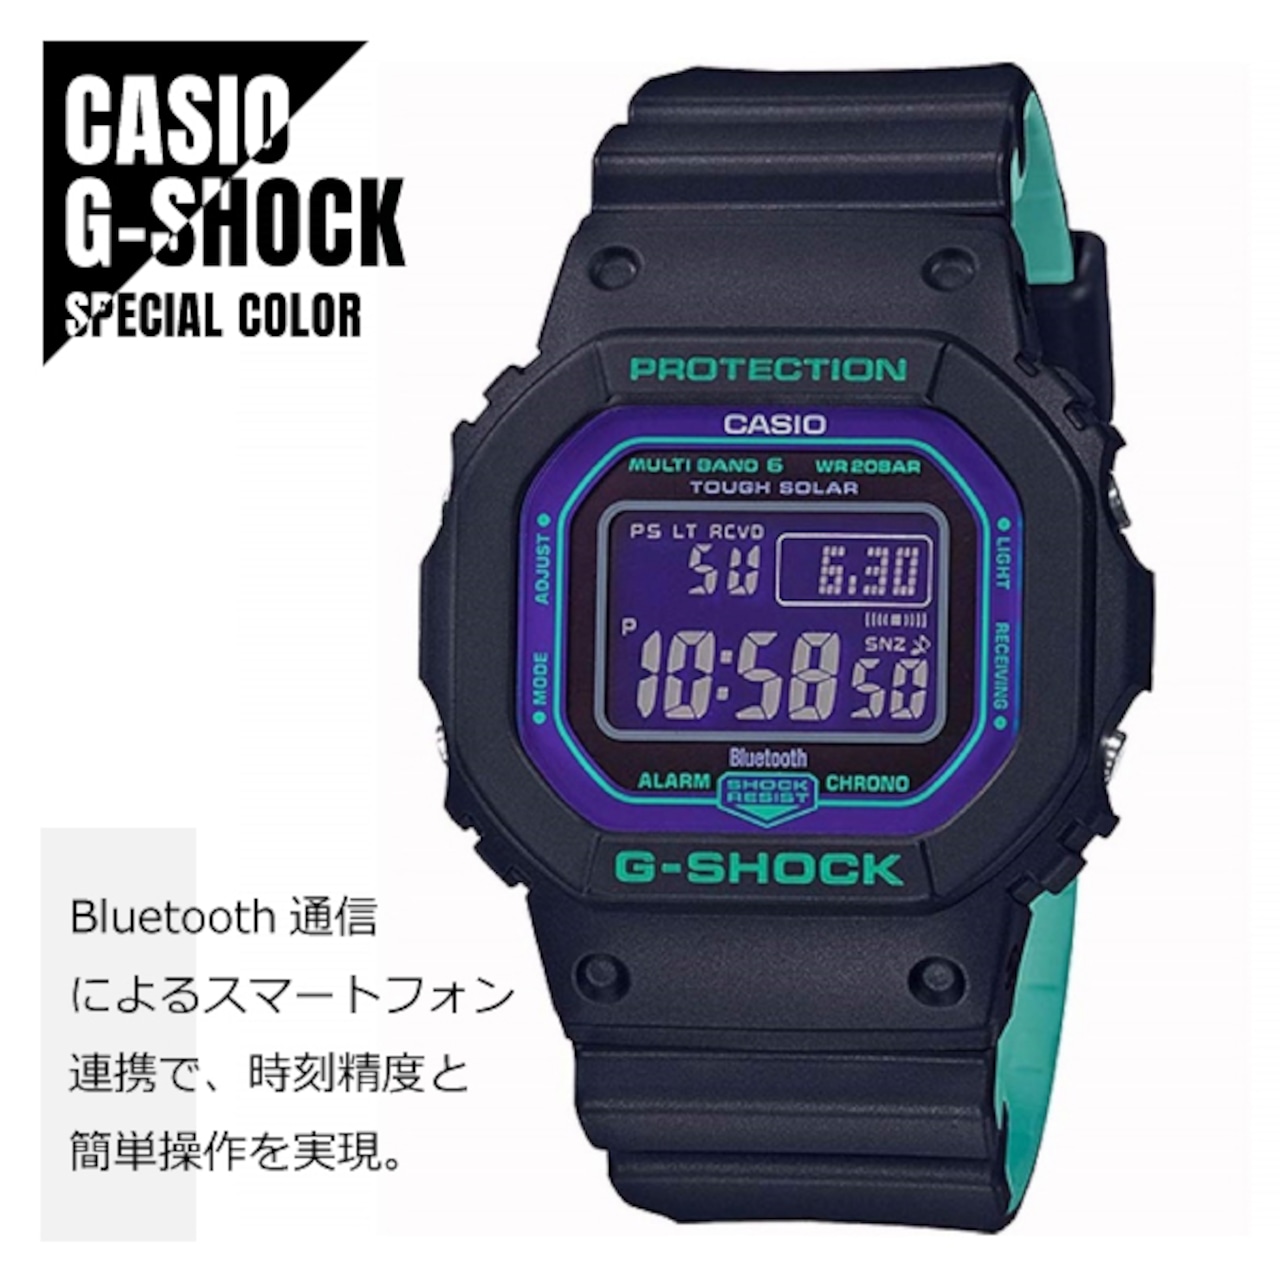 CASIO カシオ G-SHOCK G-ショック レトロスポーツテイスト 電波ソーラー スマートフォンリンク機能 GW-B5600BL-1 パープル×ブラック×グリーン メンズ 腕時計